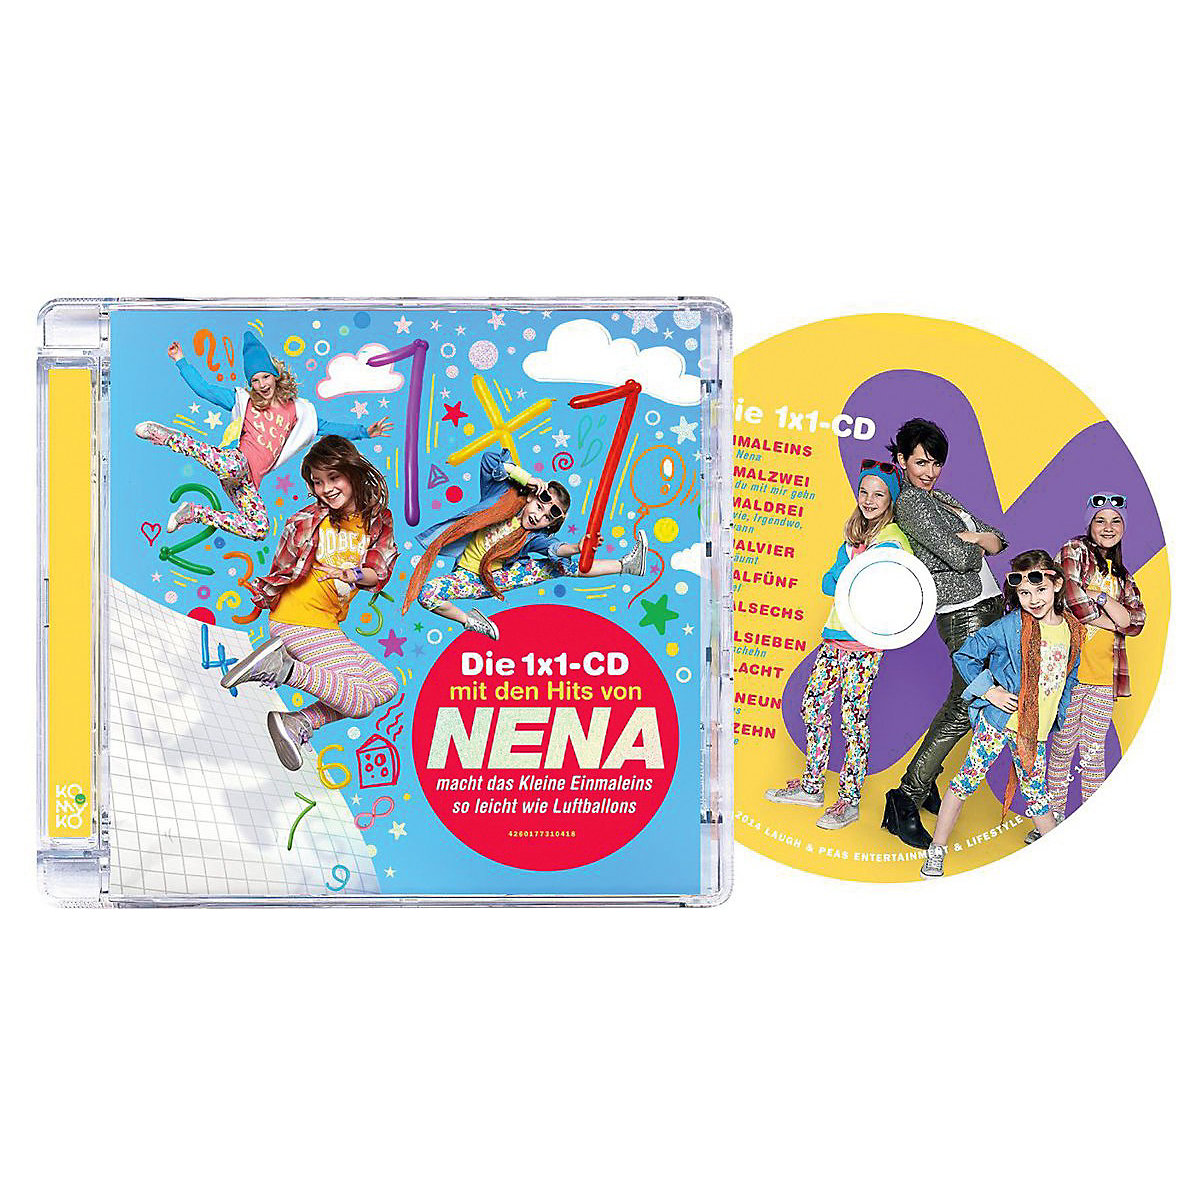 CD Das 1x1 Album mit den Hits von Nena